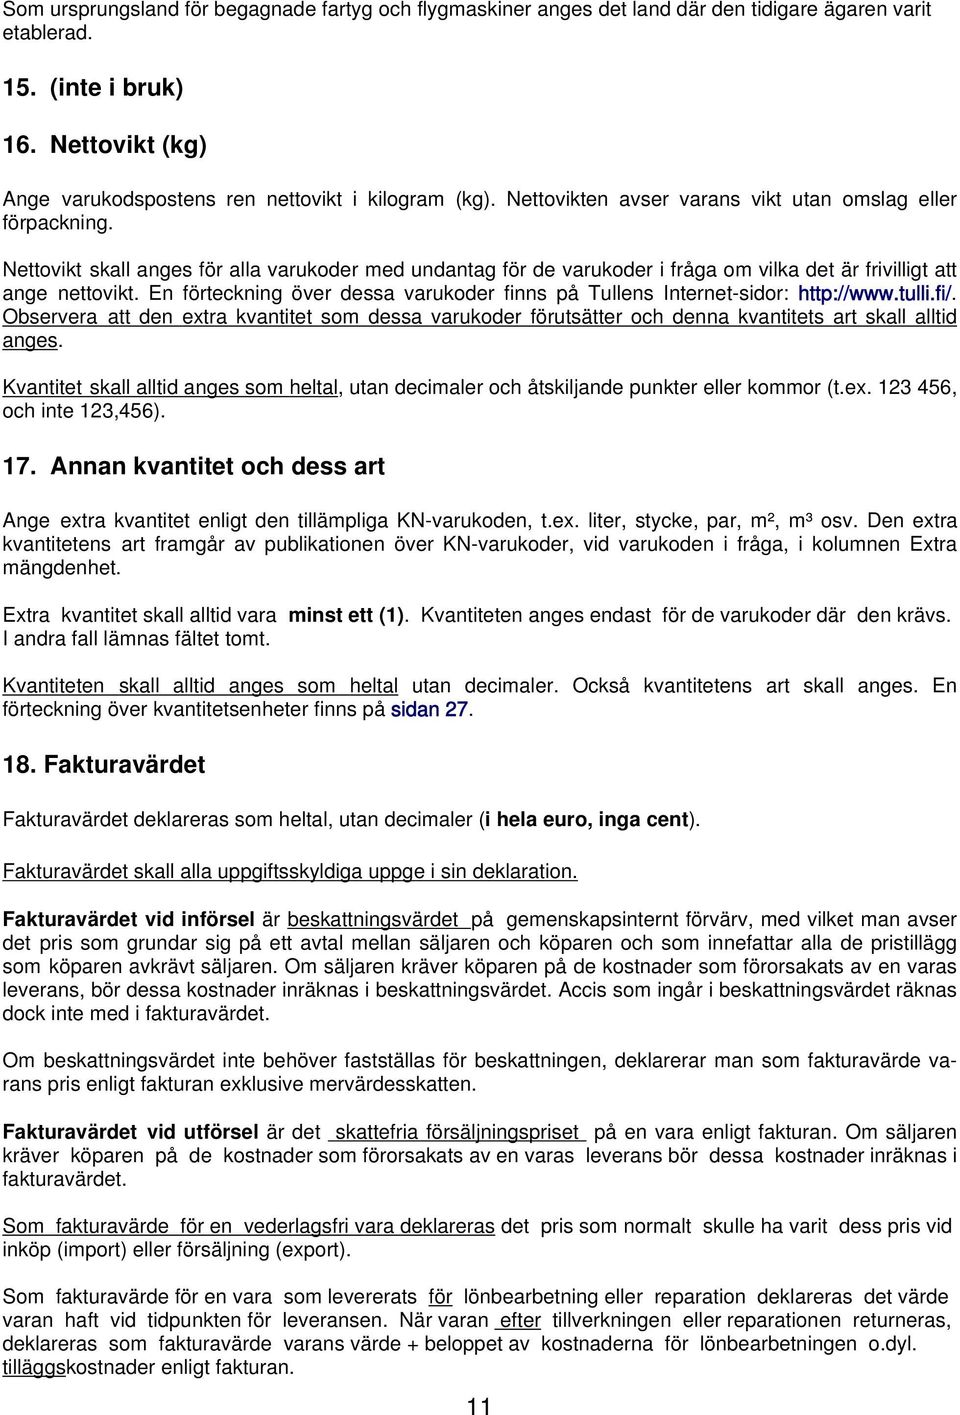 En förteckning över dessa varukoder finns på Tullens Internet-sidor: http://www.tulli.fi/.